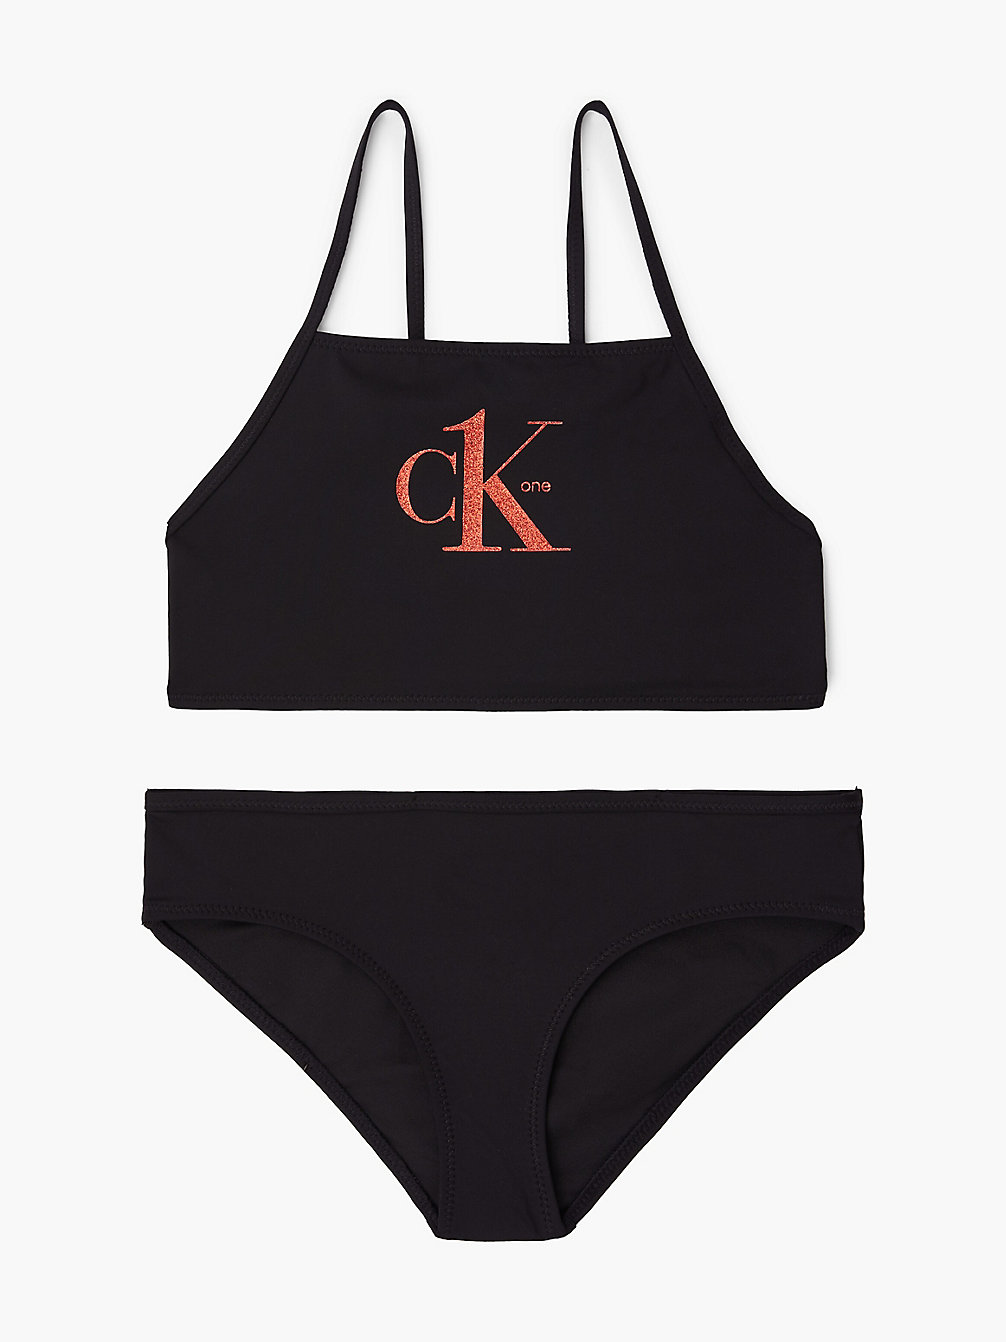 PVH BLACK > Bikini-Set Mit Bralette Für Mädchen - Y2ck One > undefined girls - Calvin Klein